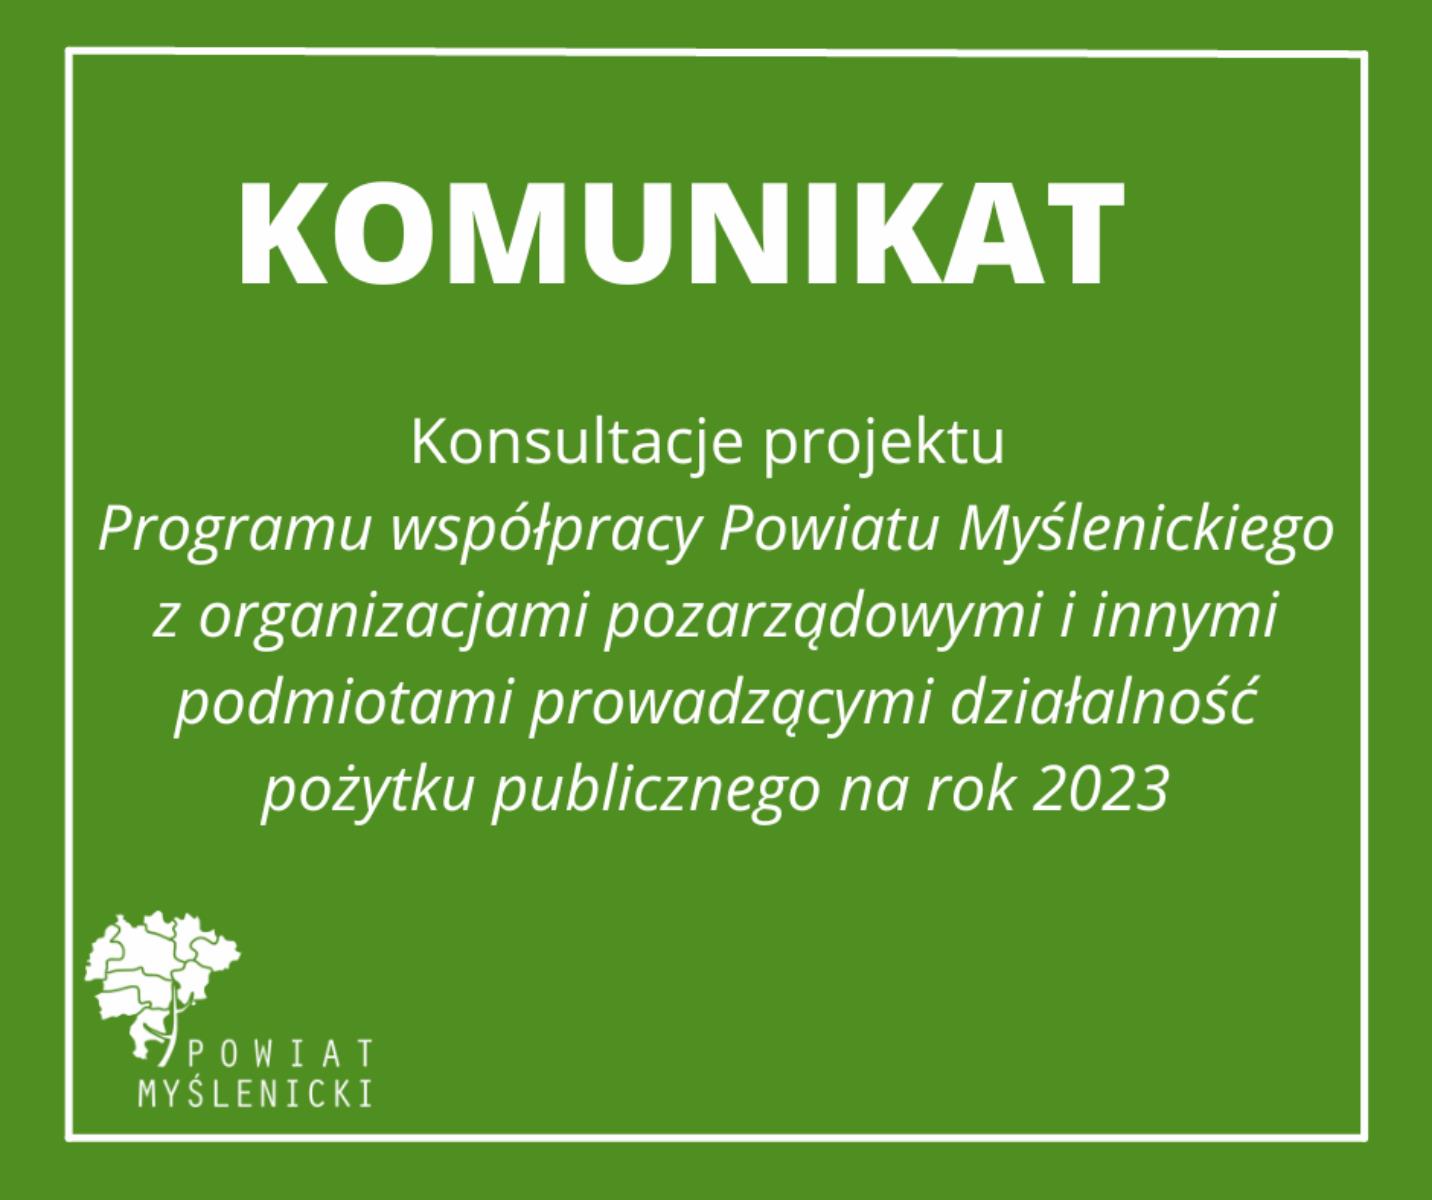 Komunikat w sprawie przeprowadzenia konsultacji projektu ,,Programu współpracy Powiatu Myślenickiego z organizacjami pozarządowymi i innymi podmiotami prowadzącymi działalność pożytku publicznego na rok 2023”